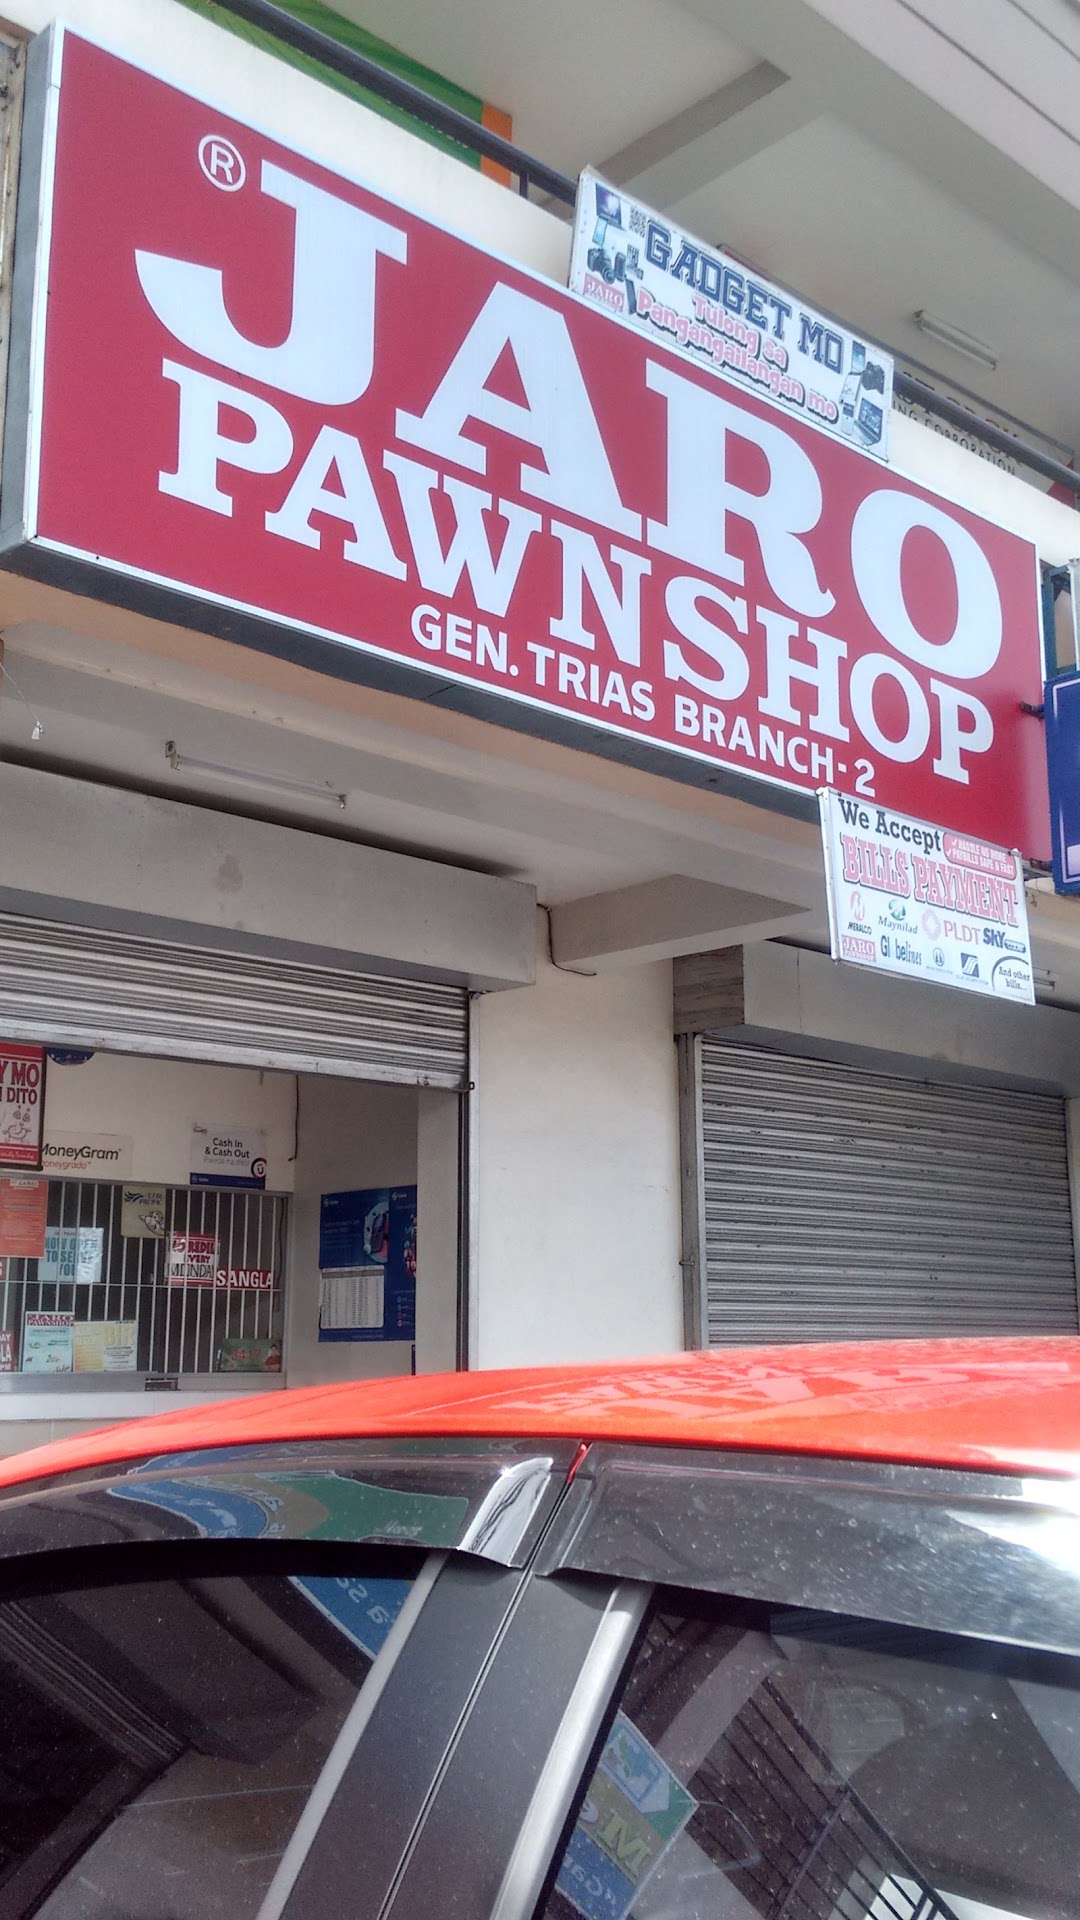 Jaro Pawnshop